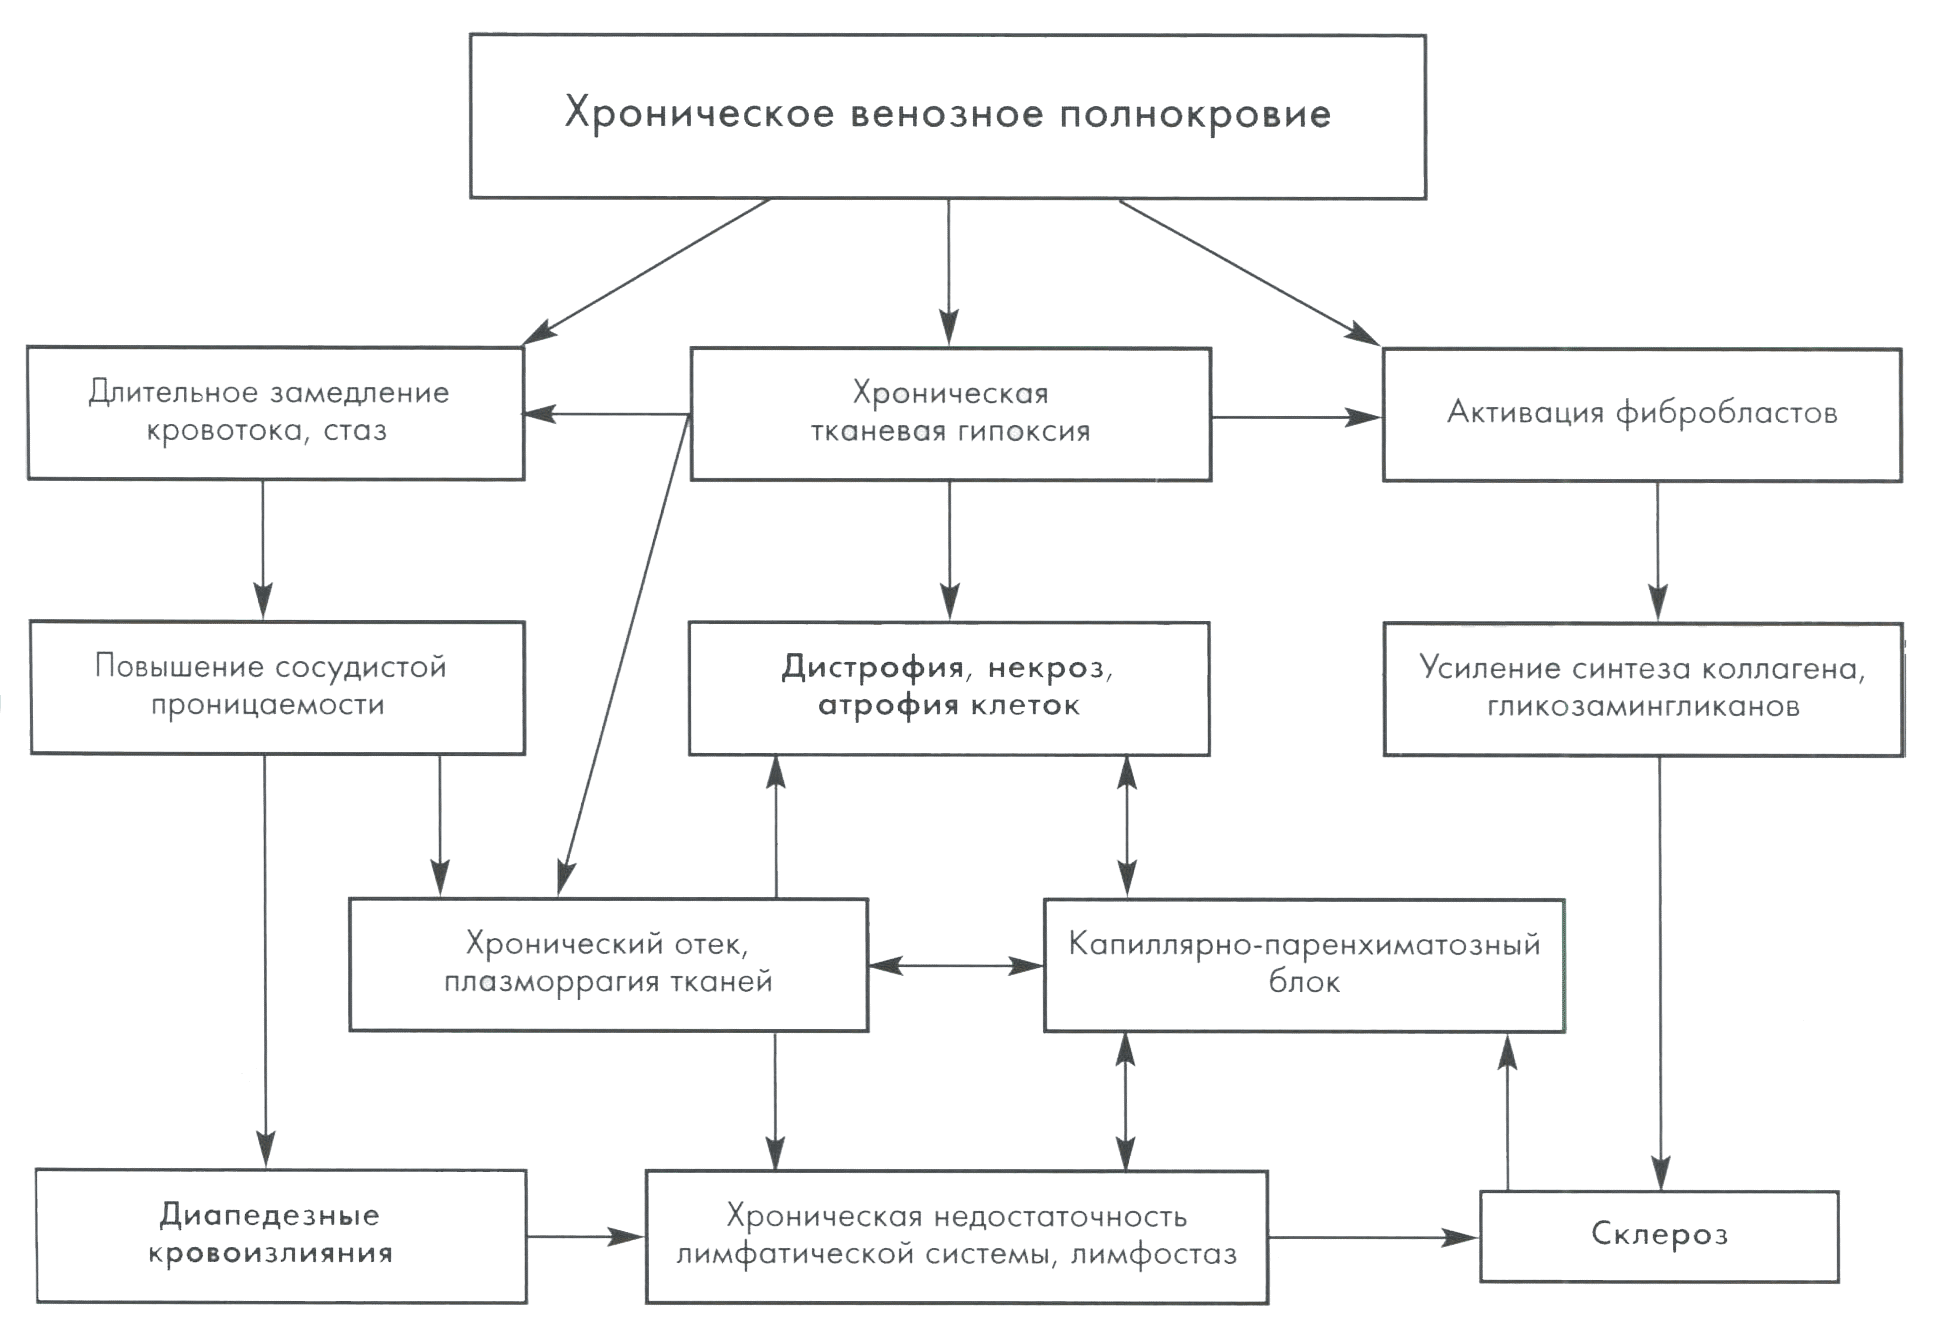 Рис. 5.4. Морфогенез изменений при хроническом венозном полнокровии (Салтыков Б. Б. исоавт., 2002).